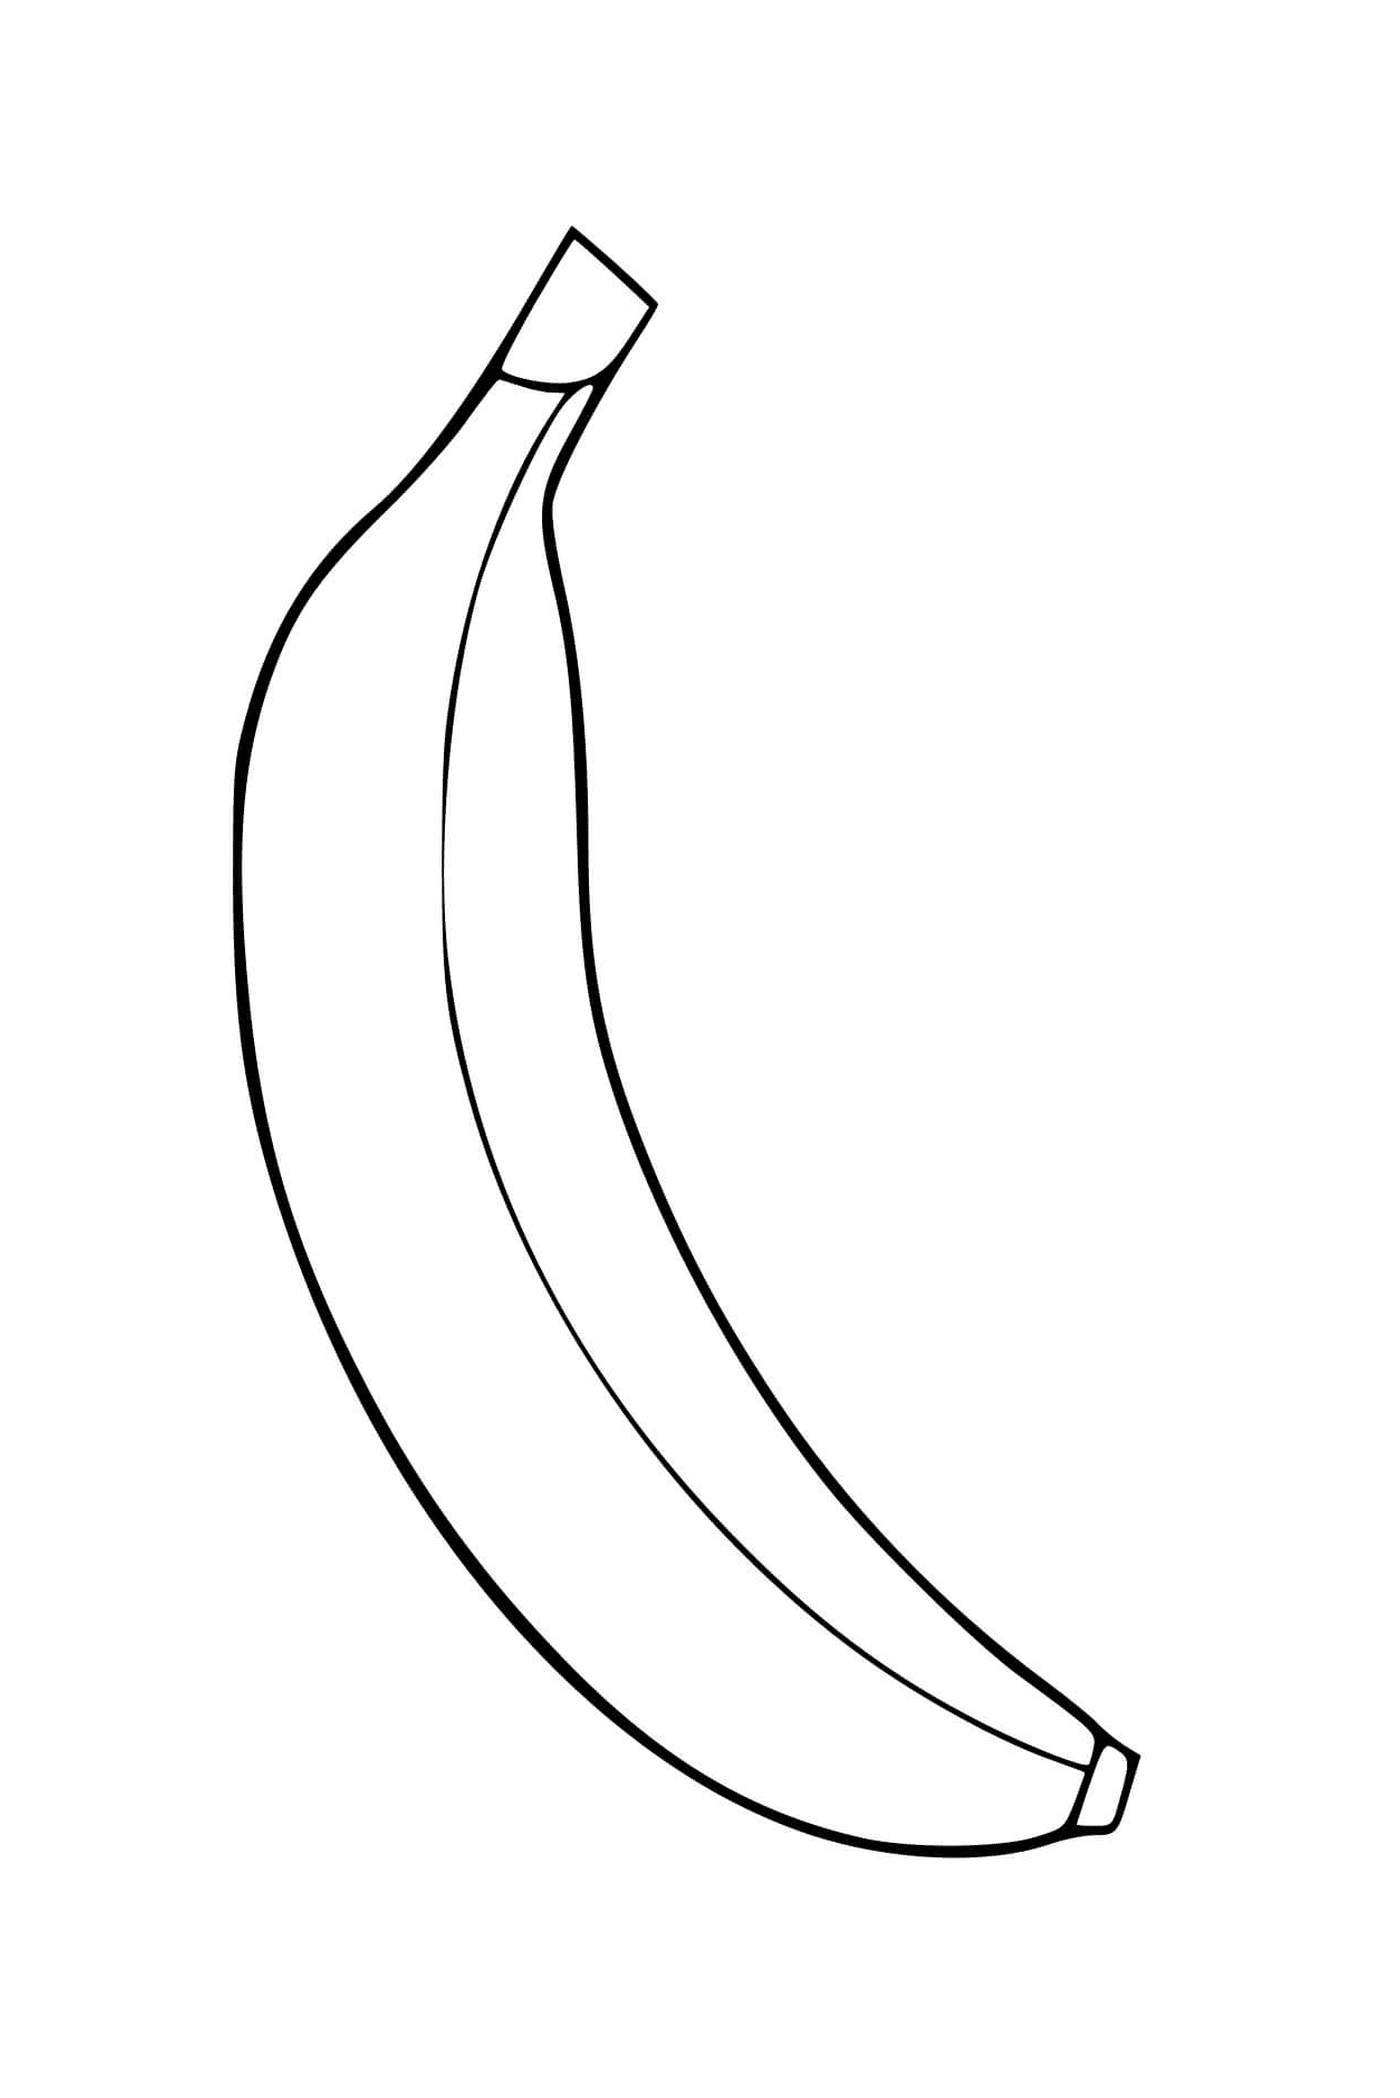  A banana 